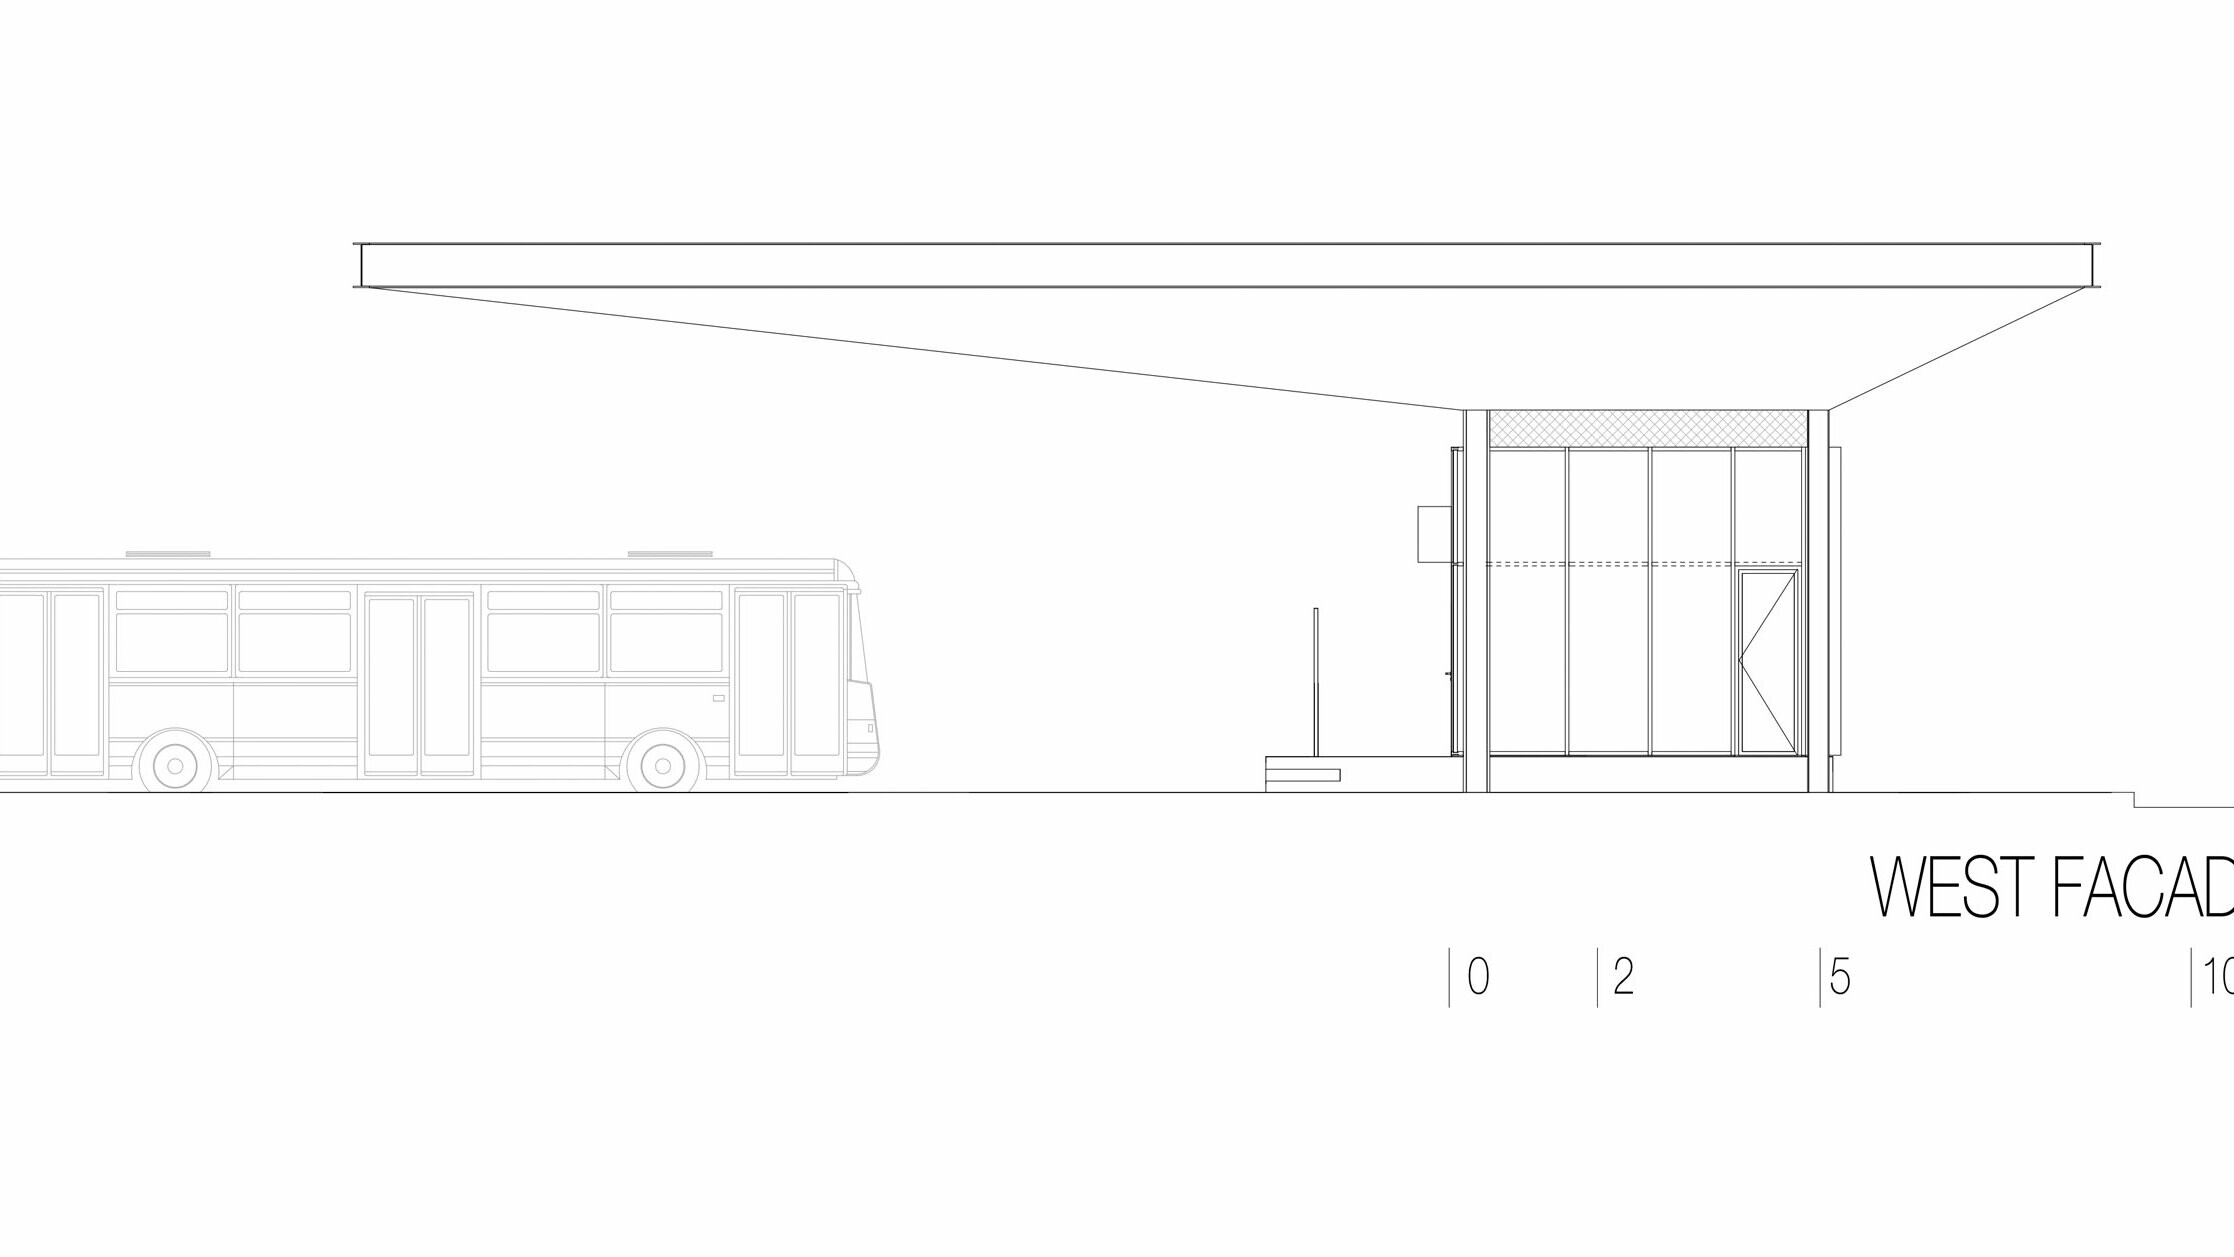 Die Zeichnung zeigt die Westansicht der Bushaltestelle "Autobusni Kolodvor Slavonski Brod" in Kroatien. Die Darstellung betont das lange, horizontale weiße Prefalz-Dach von PREFA, das über den darunterliegenden Bereich hinausragt. Rechts in der Zeichnung ist ein rechteckiger Baukörper mit großen Glasflächen und klaren Linien zu sehen. Links befindet sich ein Bus, der die Proportionen der Haltestelle im Verhältnis zu einem Fahrzeug verdeutlicht. Die Westansicht betont die moderne und funktionale Architektur der Haltestelle, die durch die Kombination von Glas und Aluminium eine helle und einladende Atmosphäre schafft.